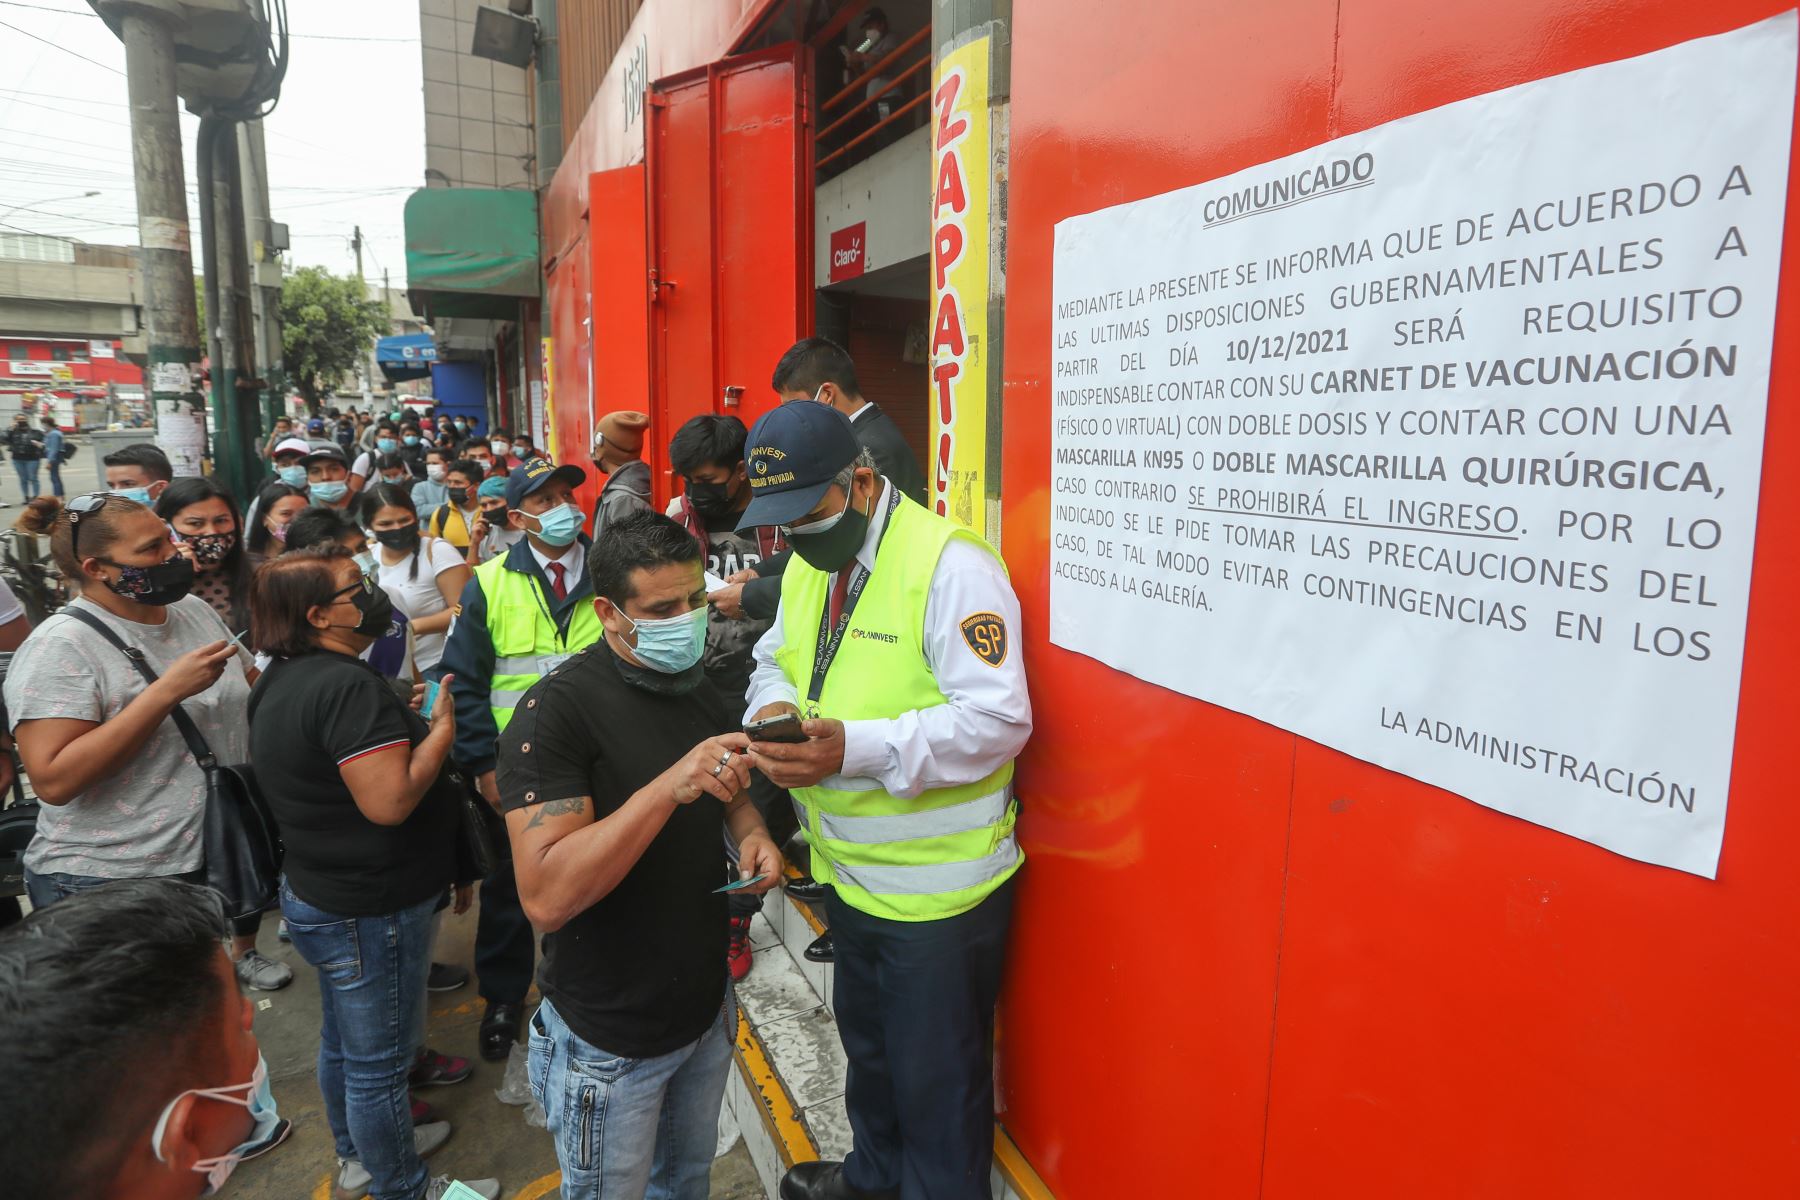 PERÚ: Gobierno establece medidas para reforzar acciones de vigilancia y prevención de la transmisión de la COVID-19